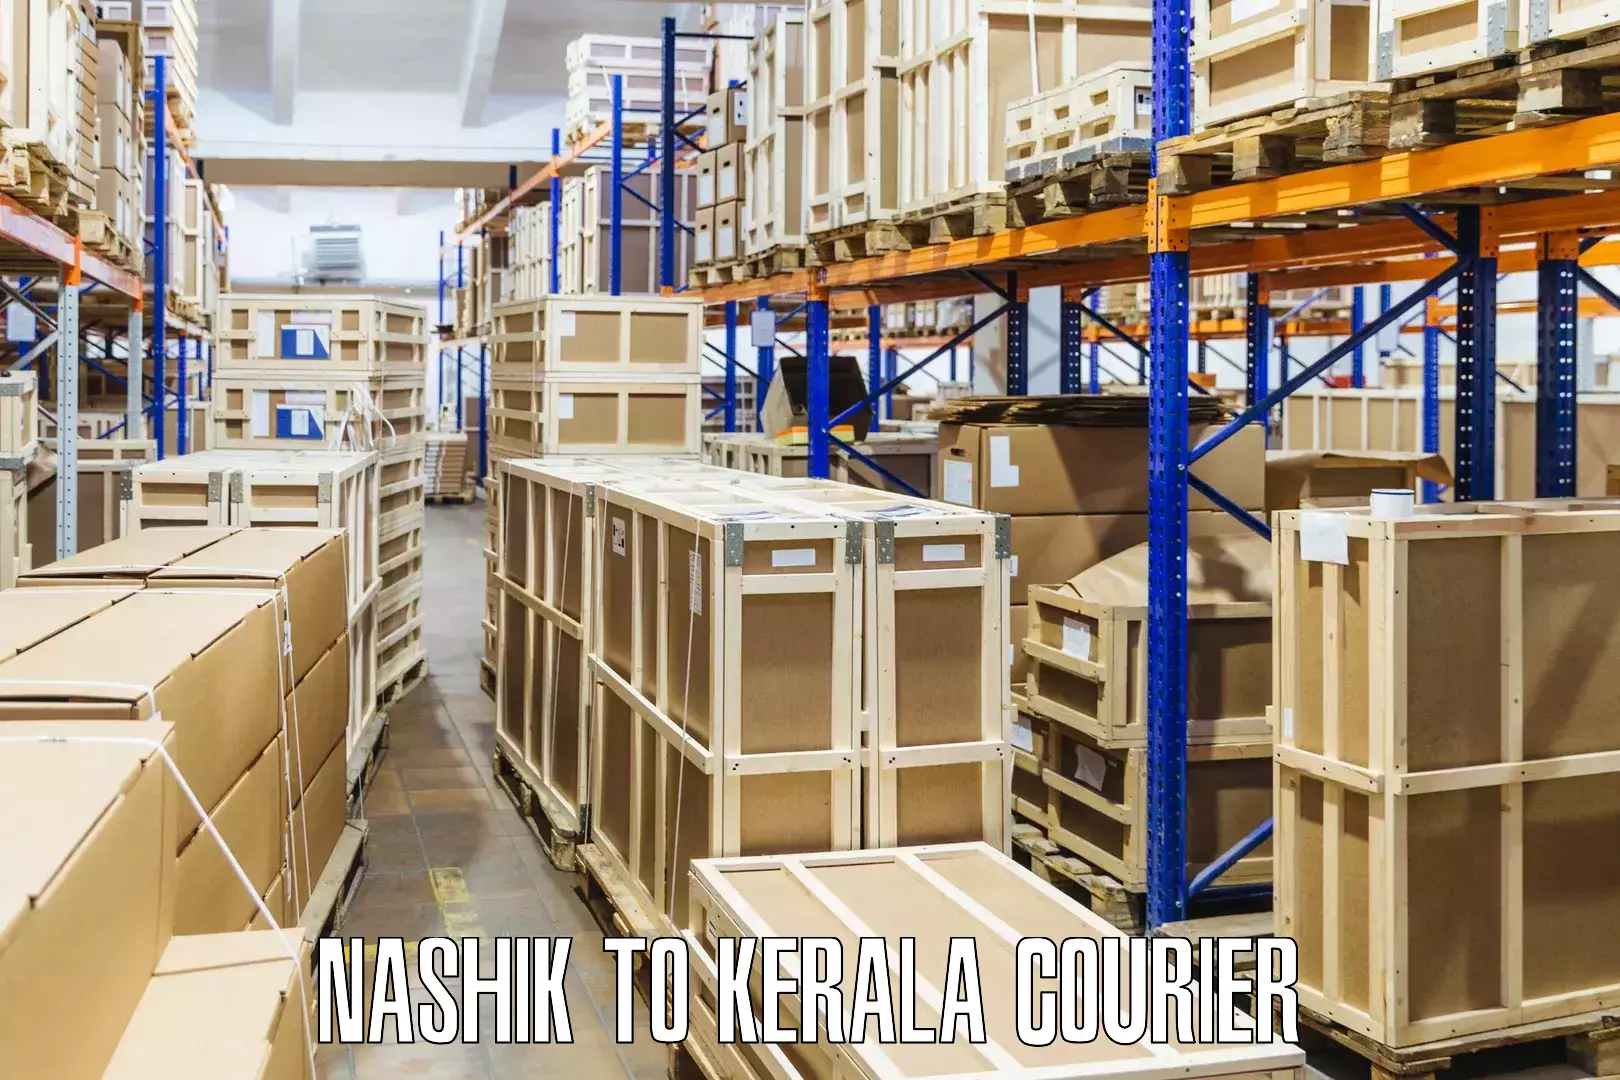 Flexible shipping options Nashik to Kerala